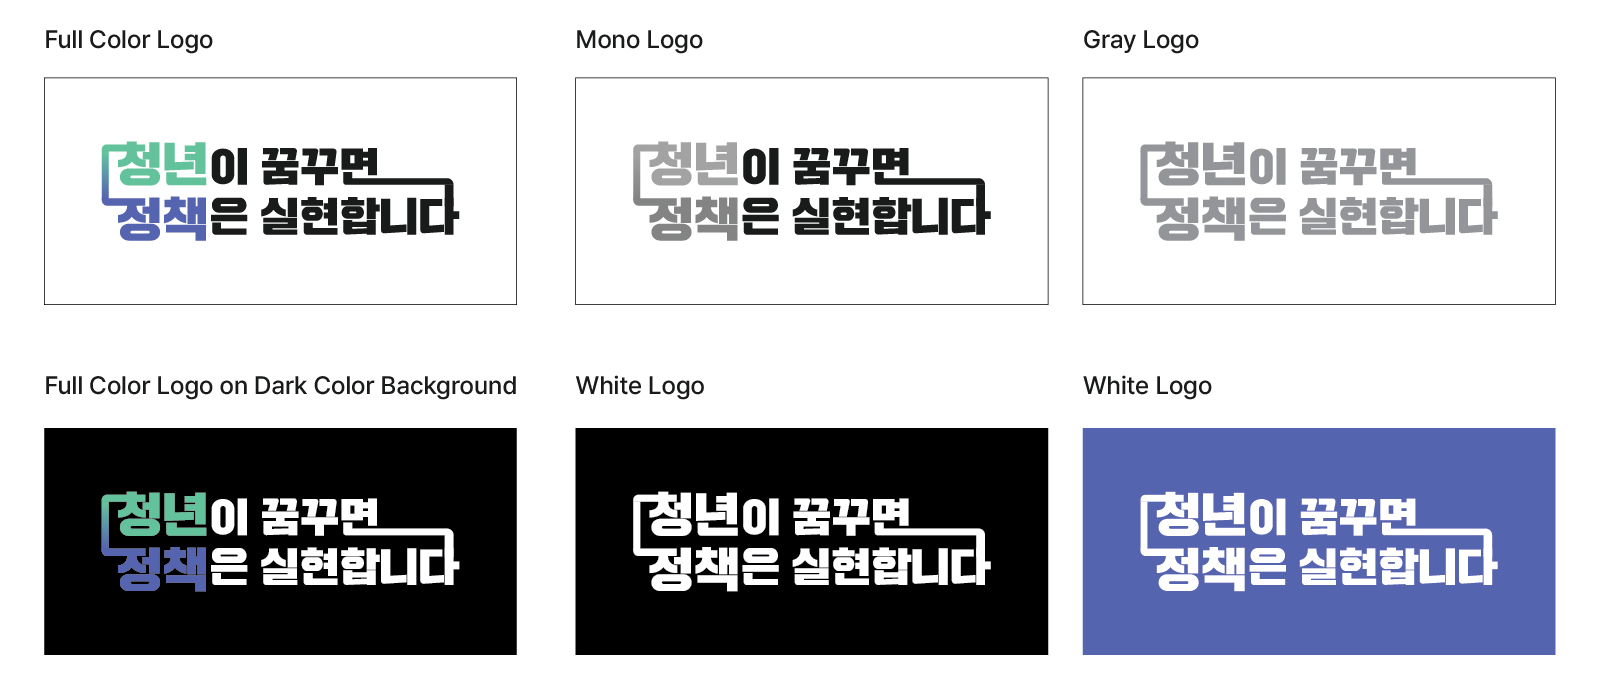 Full Color Logo, Mono Logo, Gray Logo, Full Color Logo on Dark Color Background, White Logo, White Logo